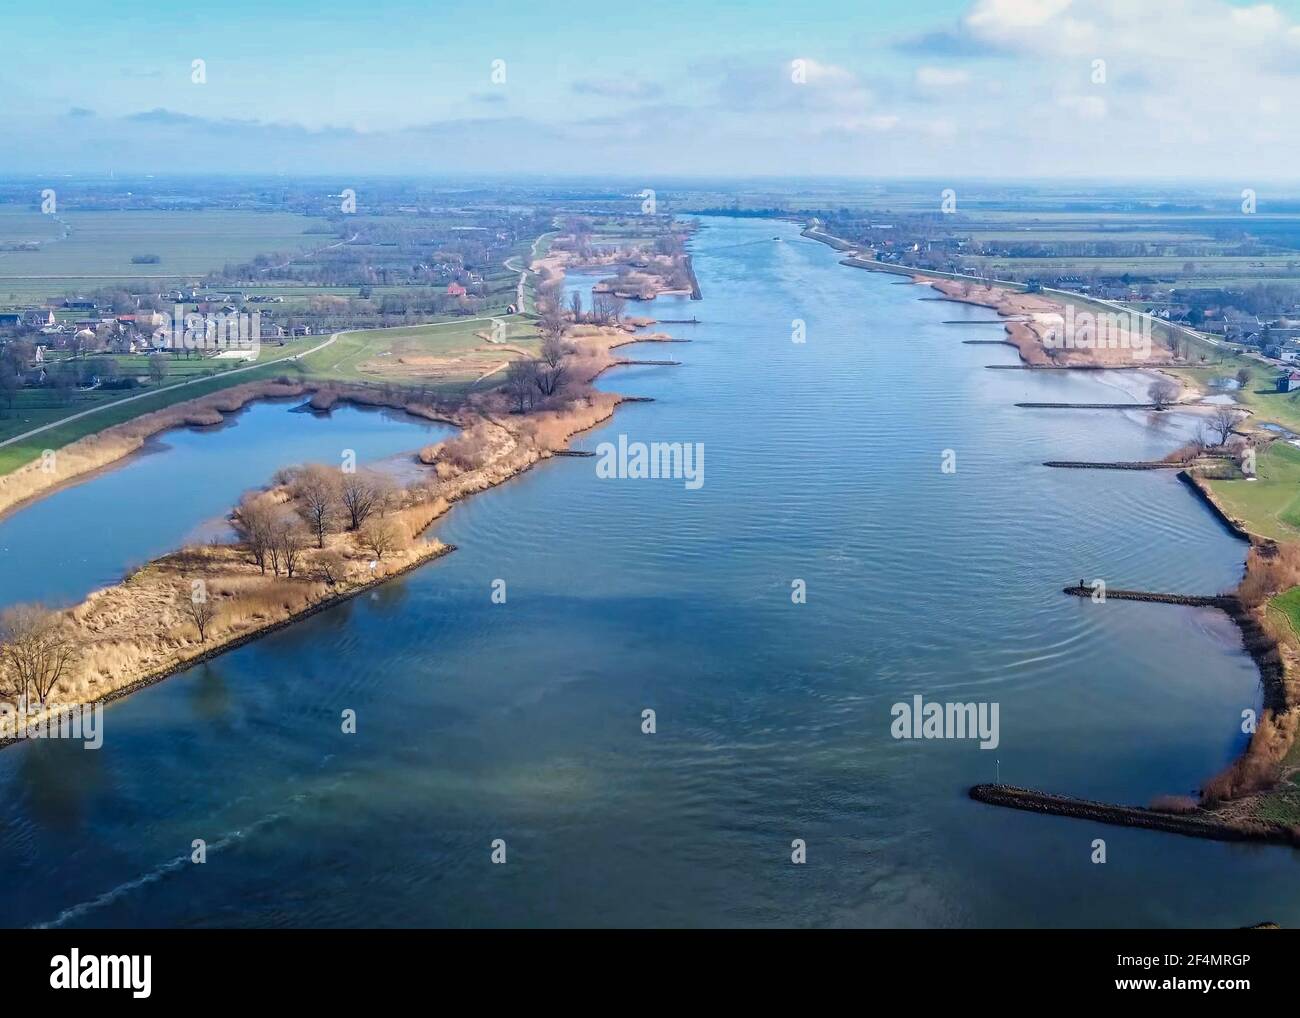 Dies ist ein Drohnenbild, das über dem Fluss Lek in den Niederlanden aufgenommen wurde. Diese liegt zwischen den Dörfern Nieuwpoort und Schoonhoven. Stockfoto